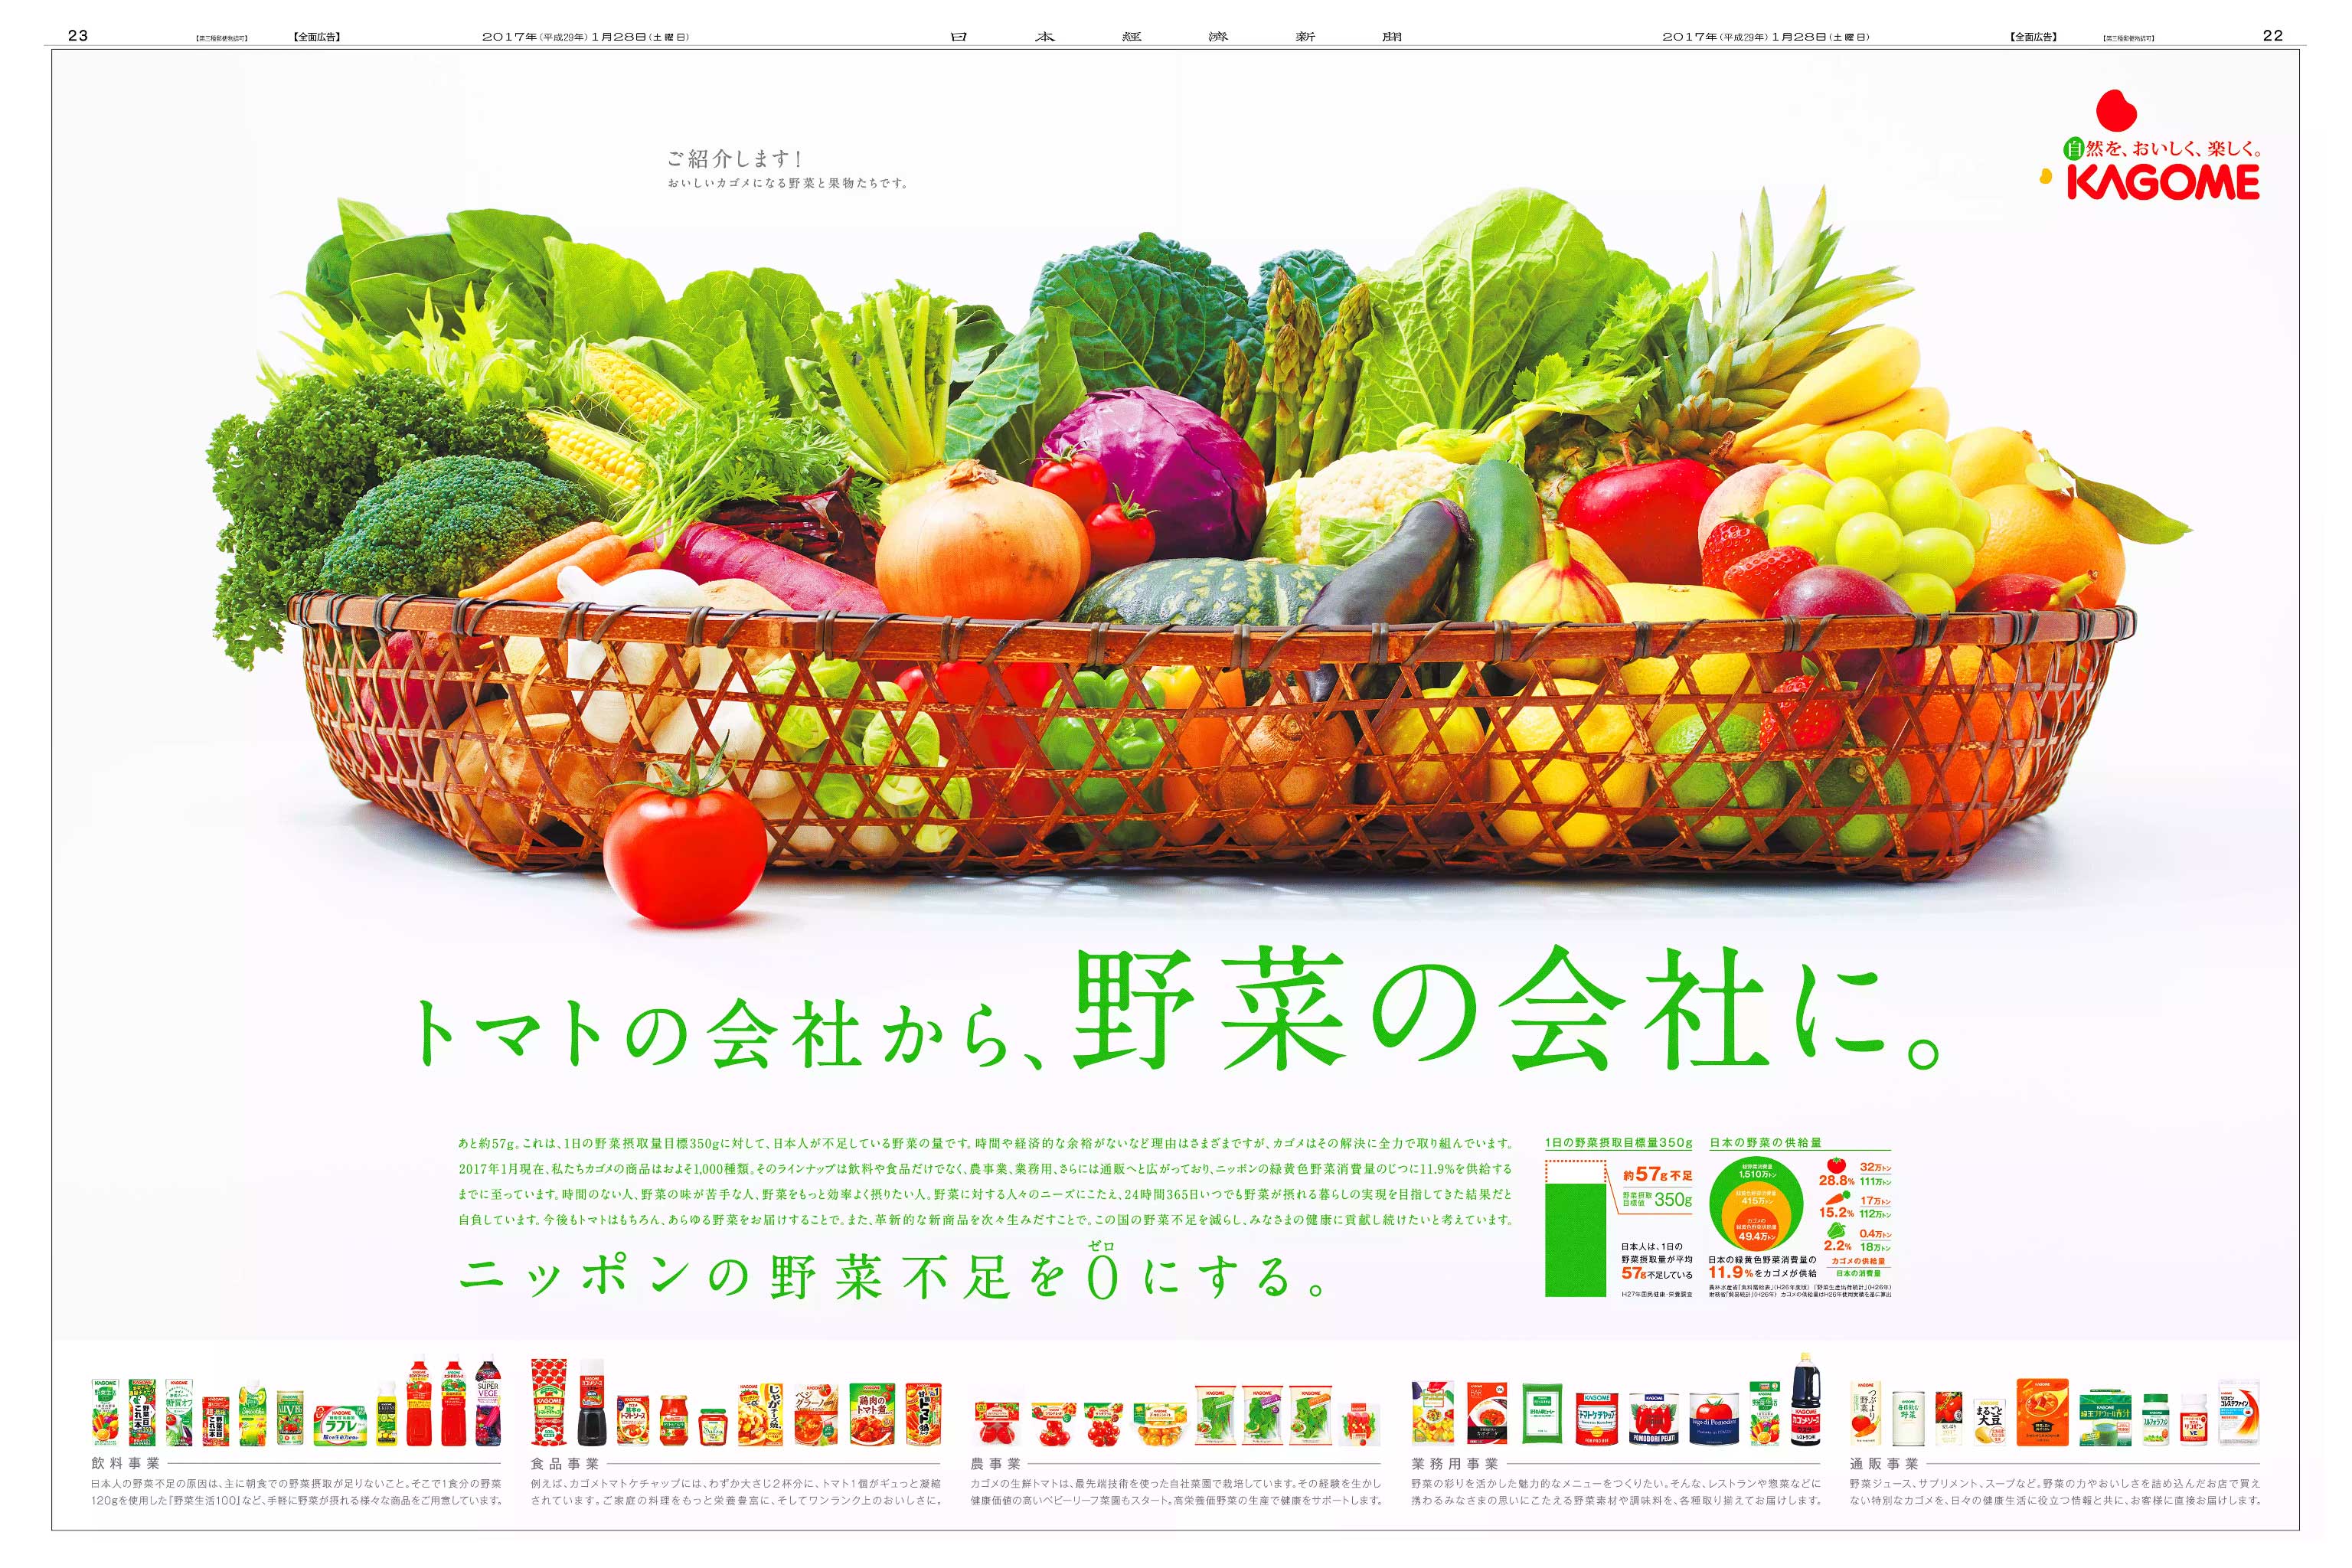 色鮮やかに「野菜の会社」宣言